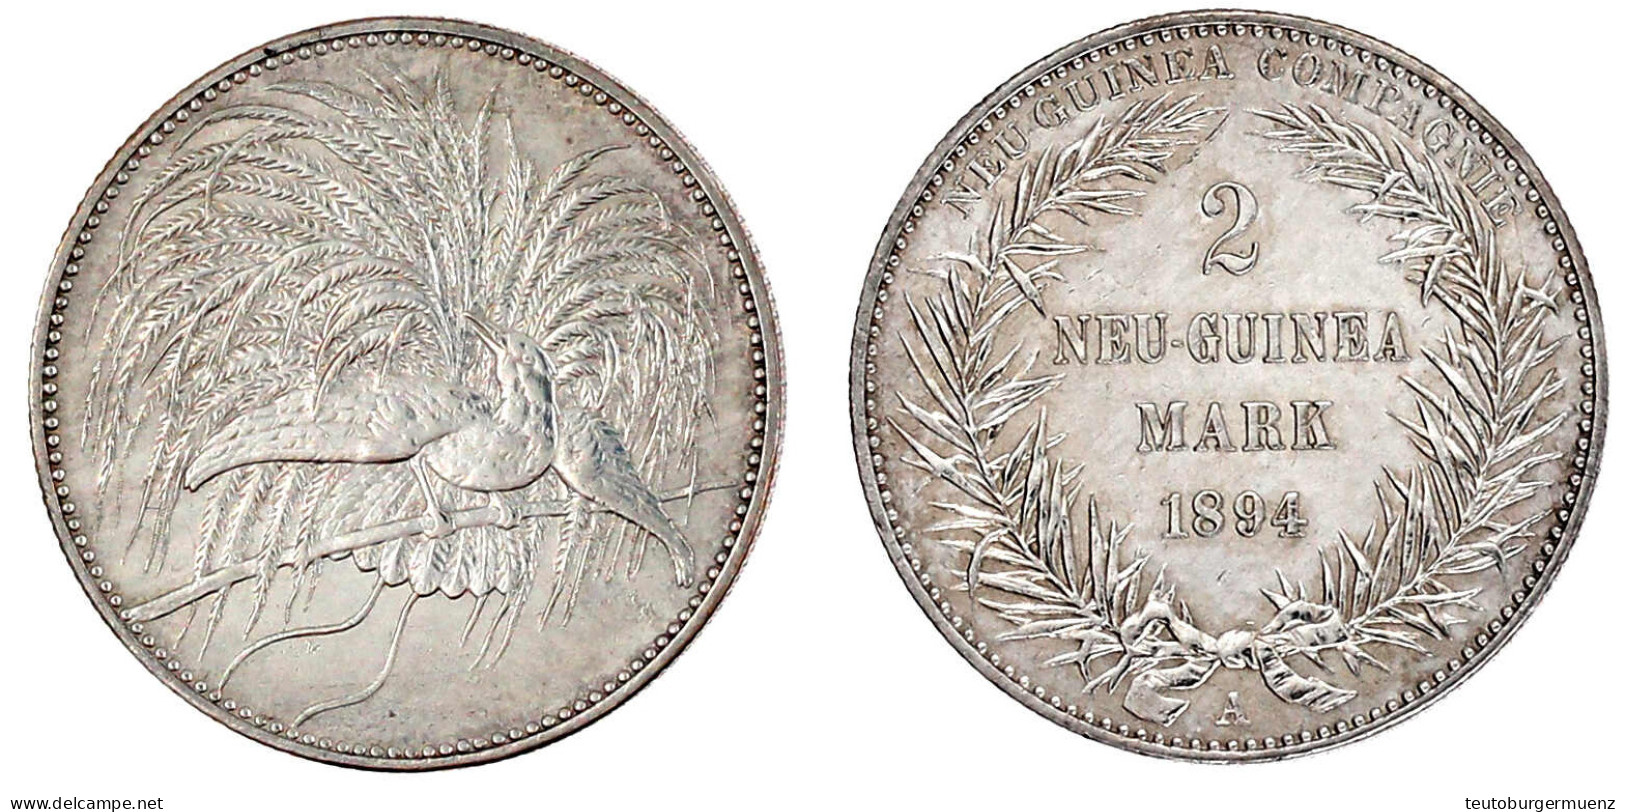 2 Neuguinea-Mark 1894 A, Paradiesvogel. Gutes Vorzüglich, Etwas Berieben. Jaeger 706. - Deutsch-Neuguinea